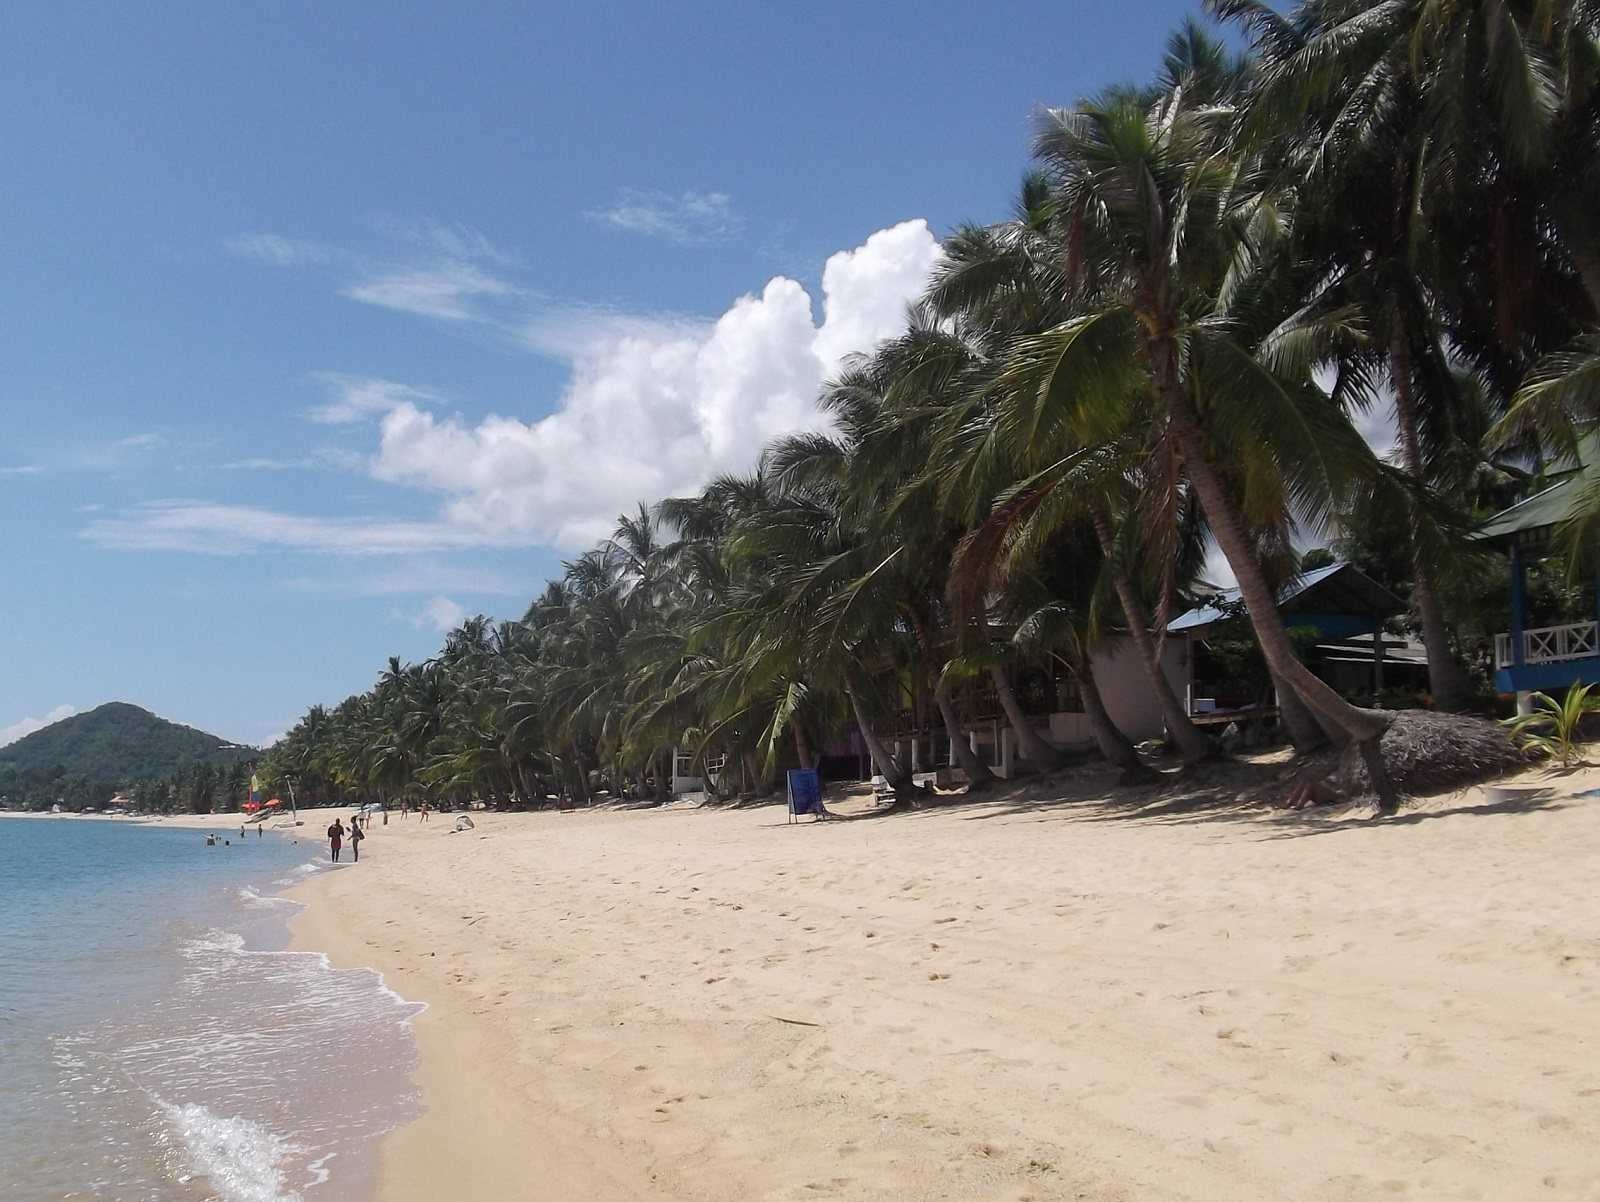 Лучшие курорты тайланда для пляжного и экскурсионного отдыха